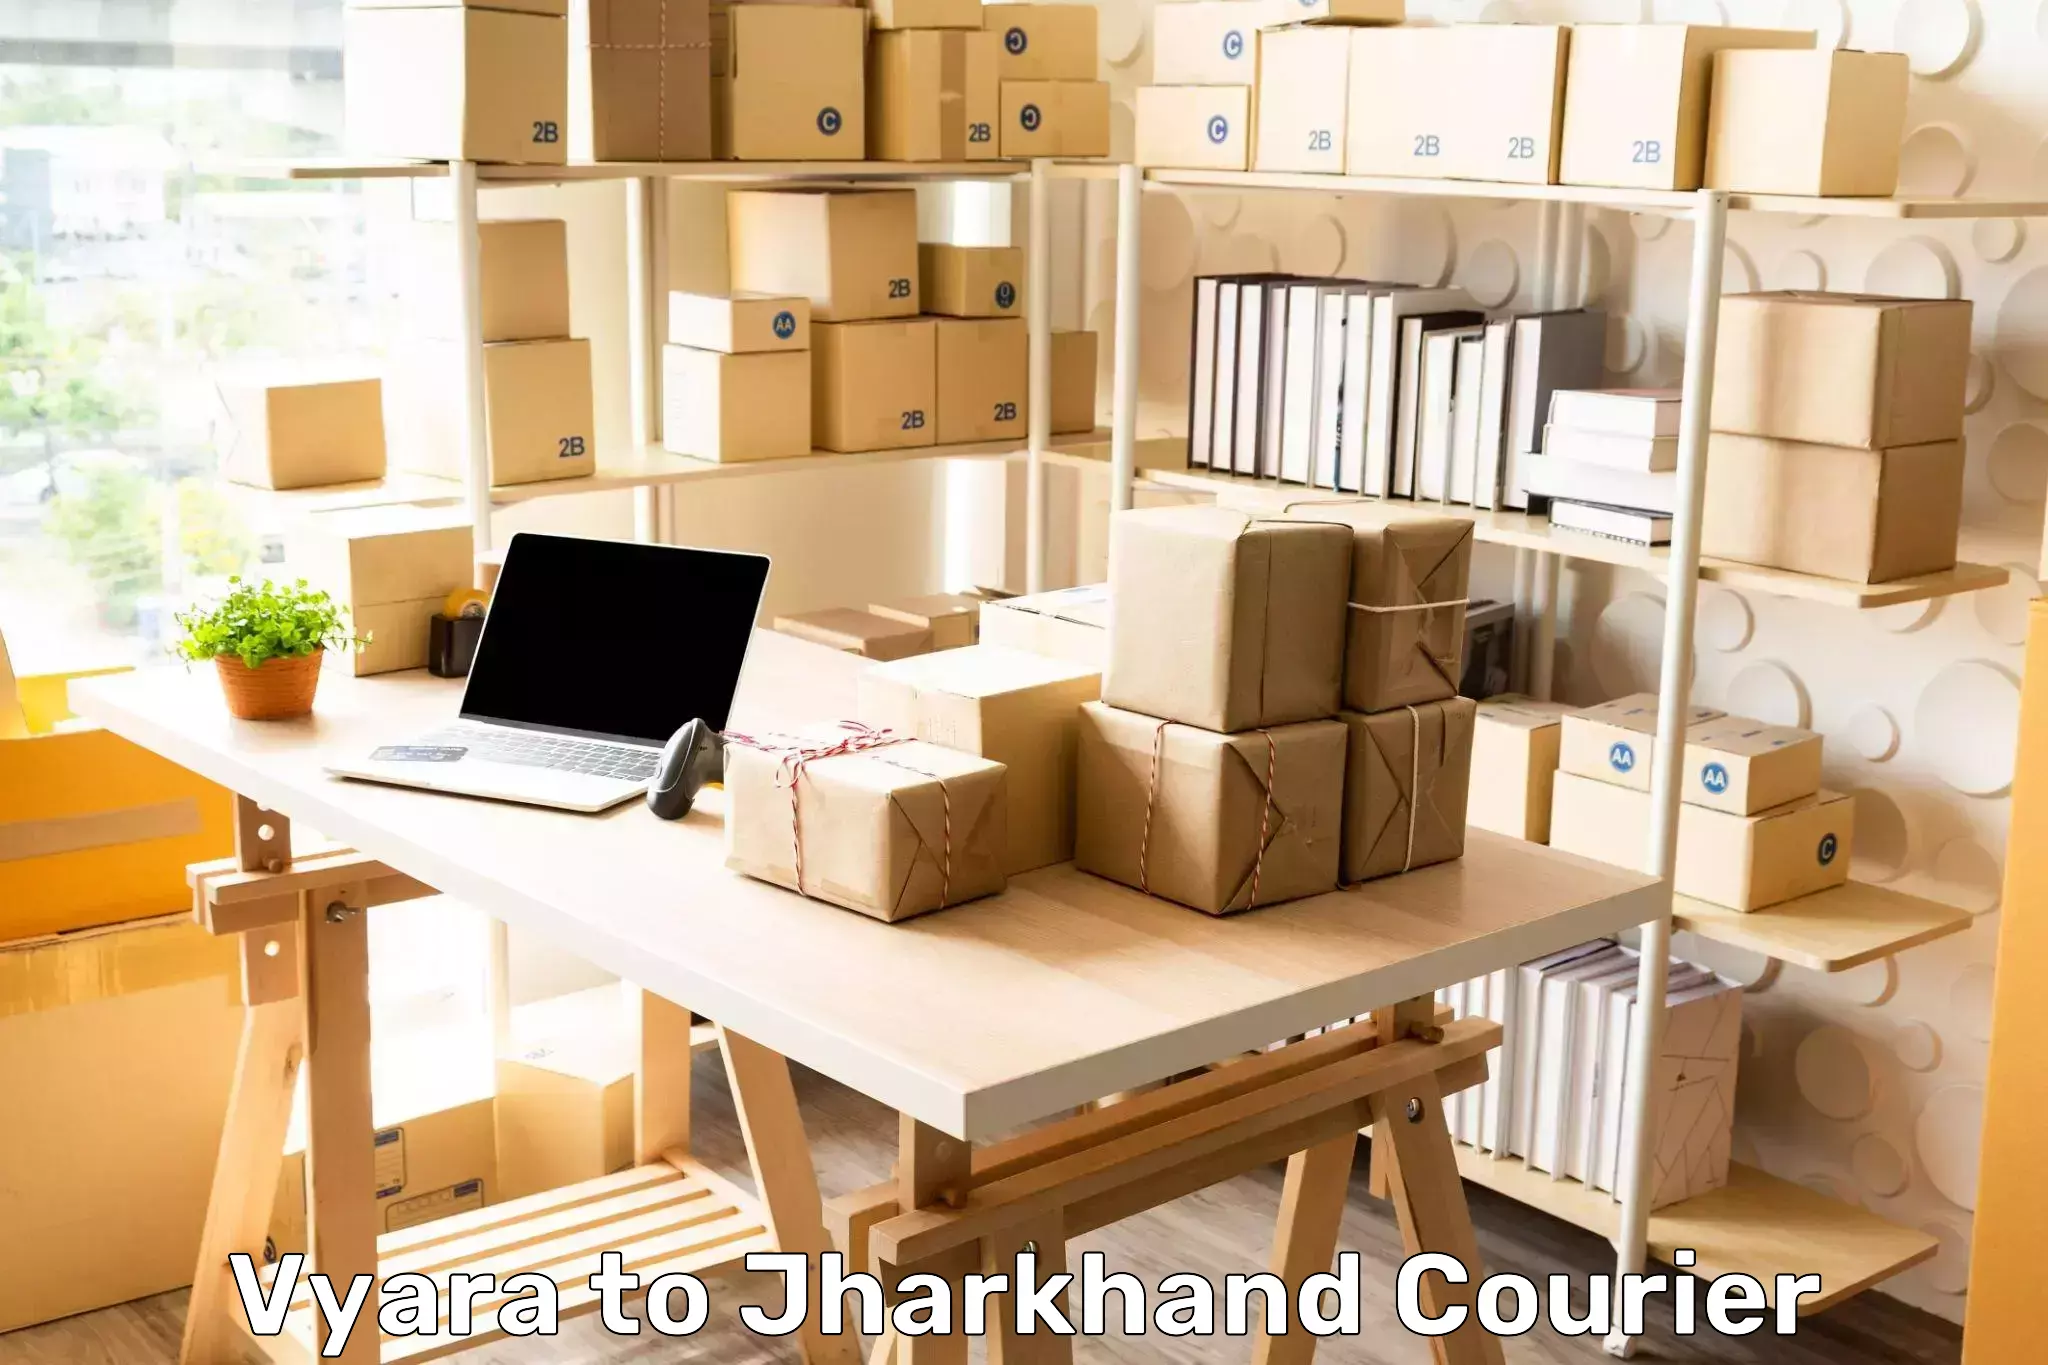 Secure package delivery Vyara to IIT Dhanbad